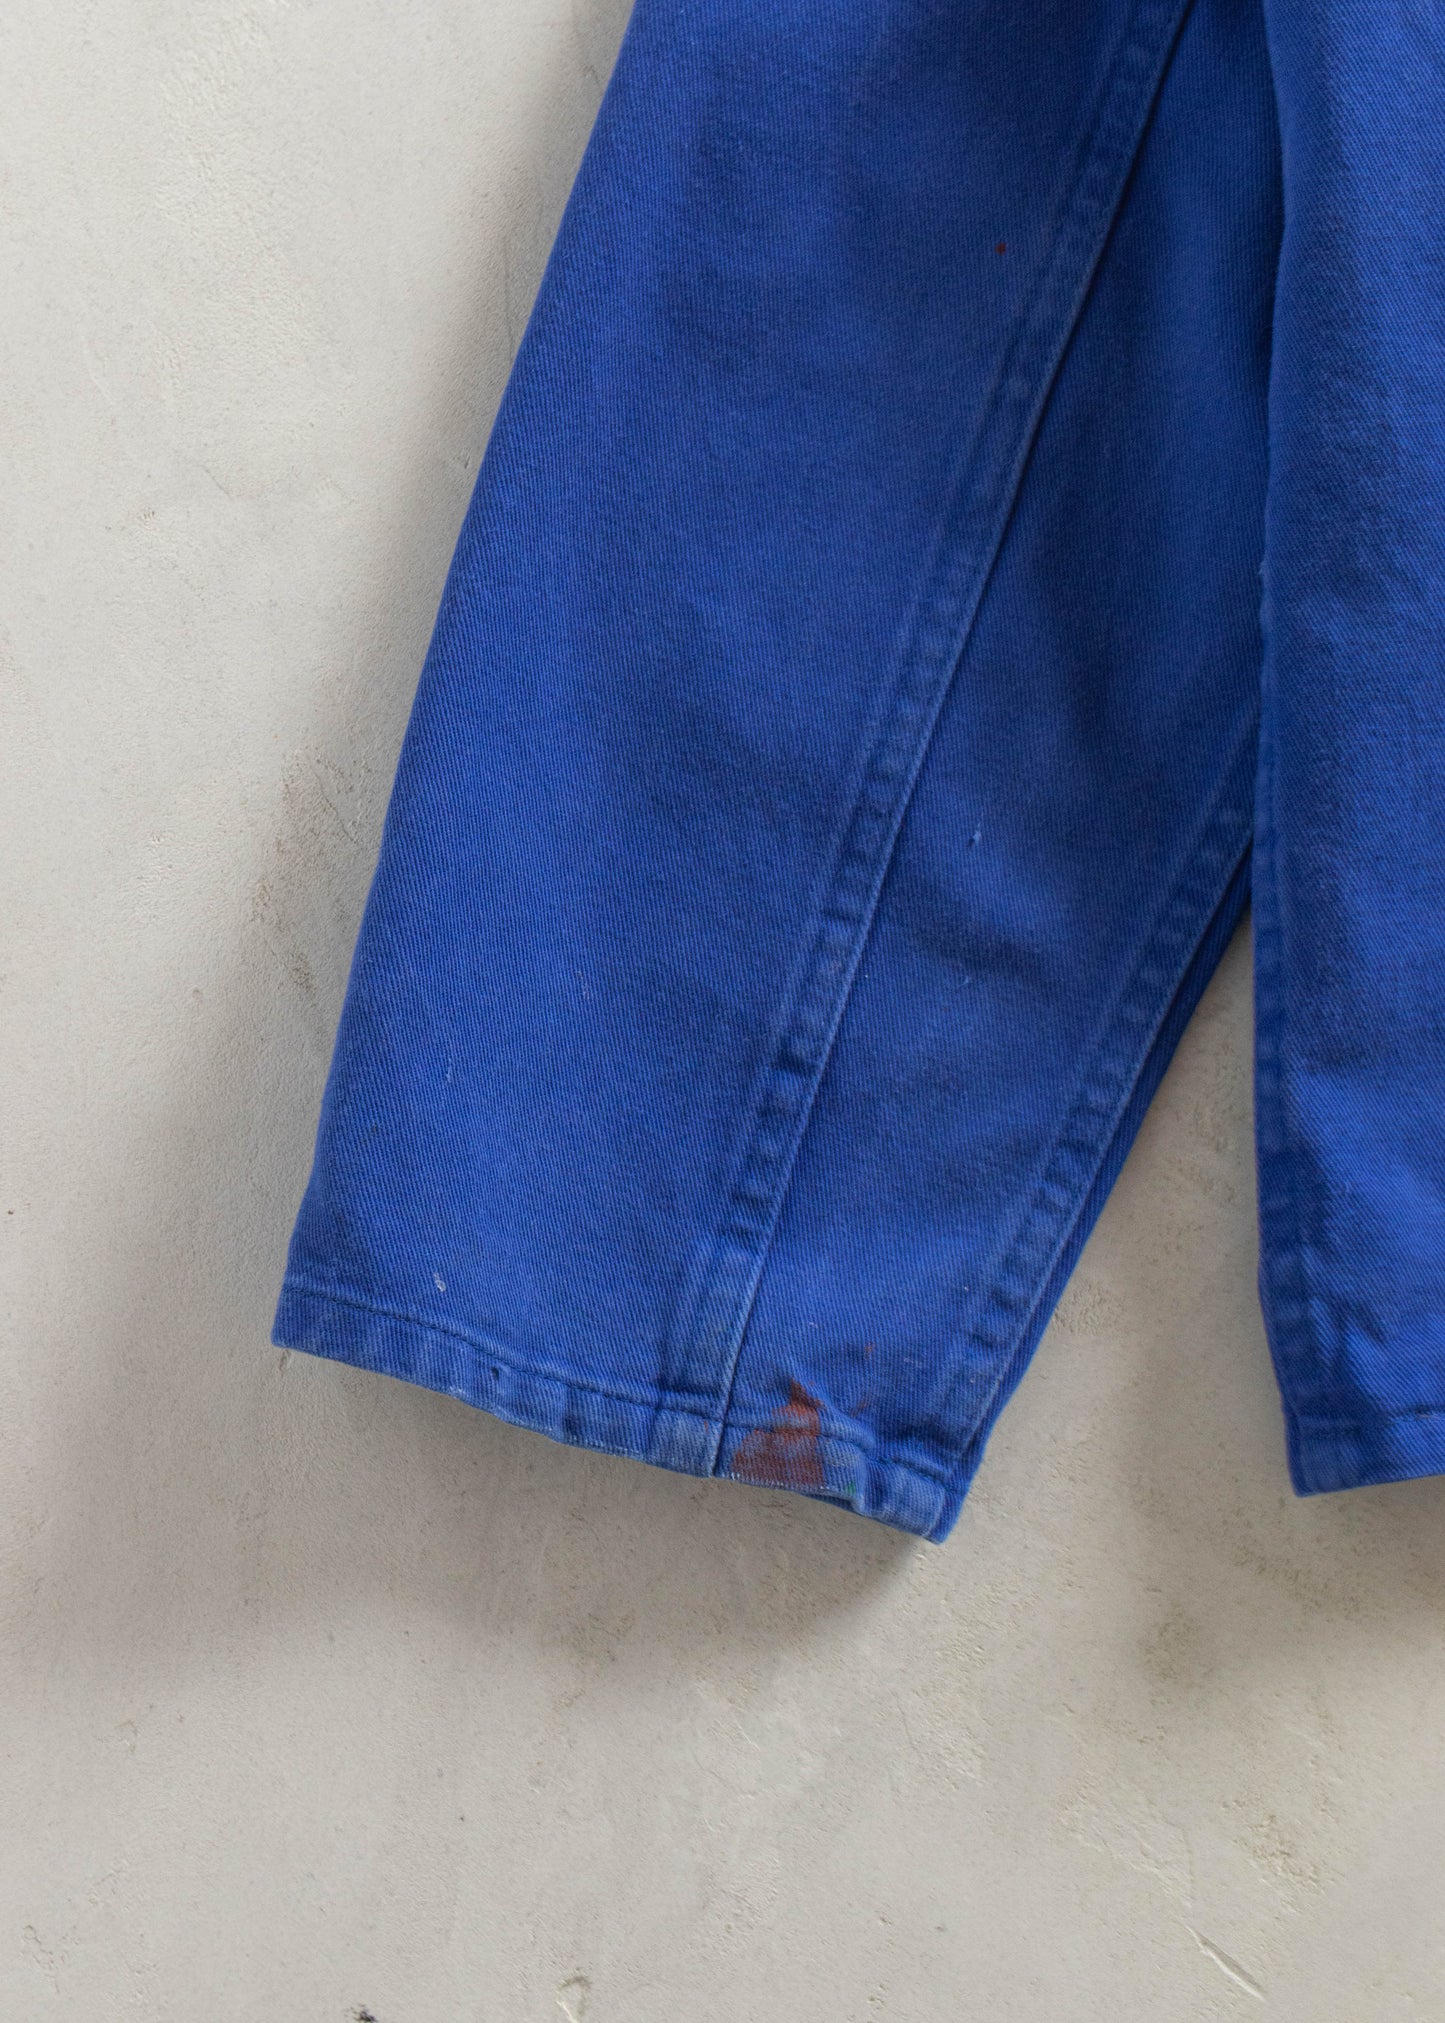 Vintage 1980s Bleu de Travail Workwear Chore Jacket Size M/L